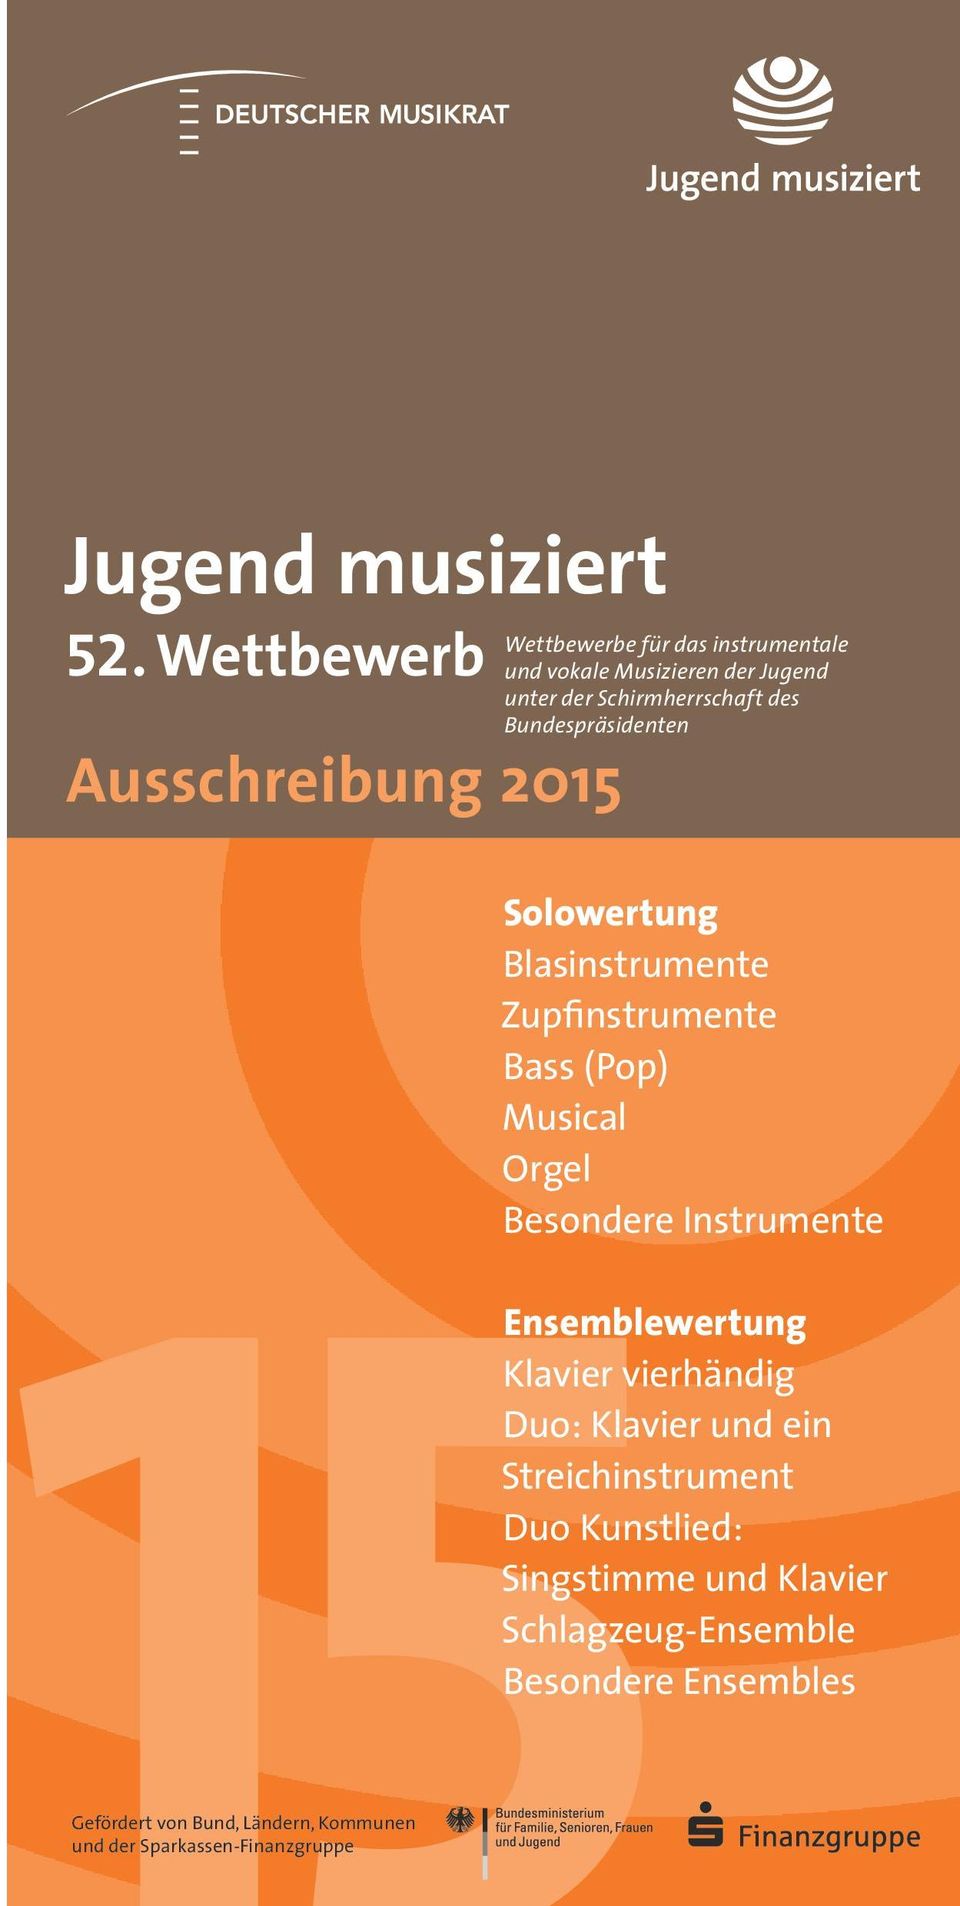 Schirmherrschaft des Bundespräsidenten Solowertung Blasinstrumente Zupfinstrumente Bass (Pop) Musical Orgel Besondere